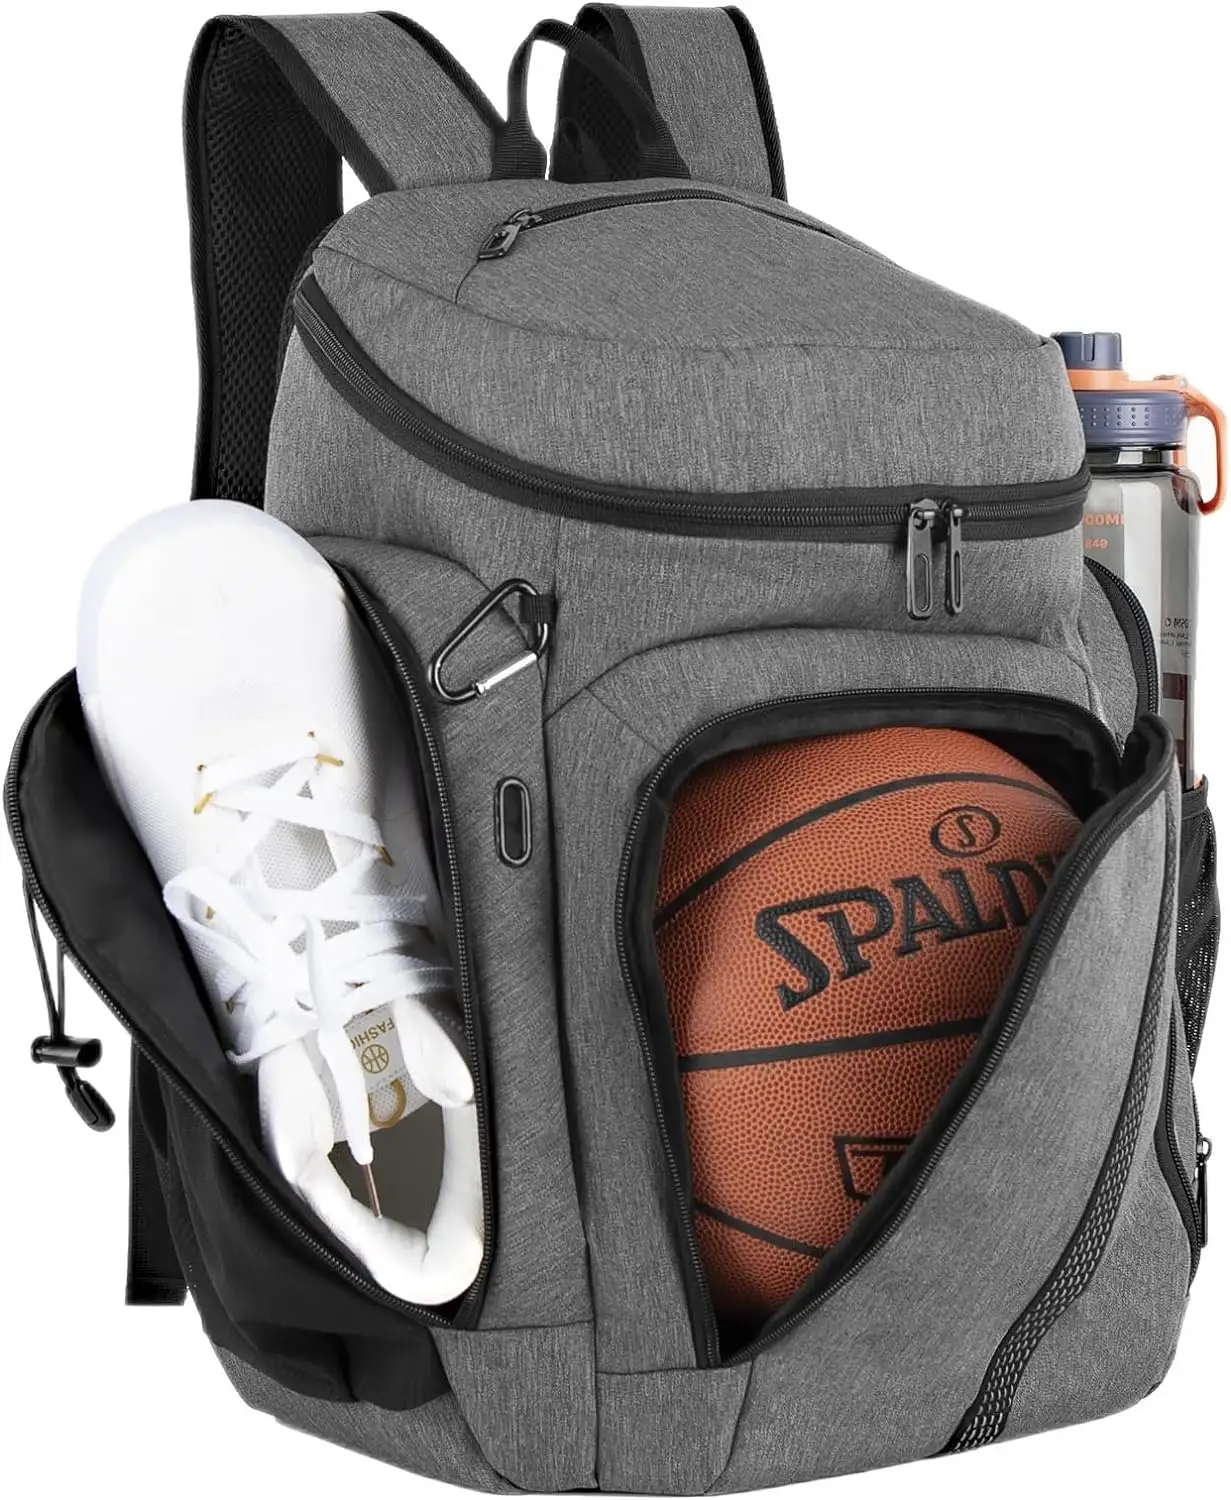 2024トラベルバスケットボールバックパックラージスポーツバッグ、独立したボールラックと靴コンパートメント付き